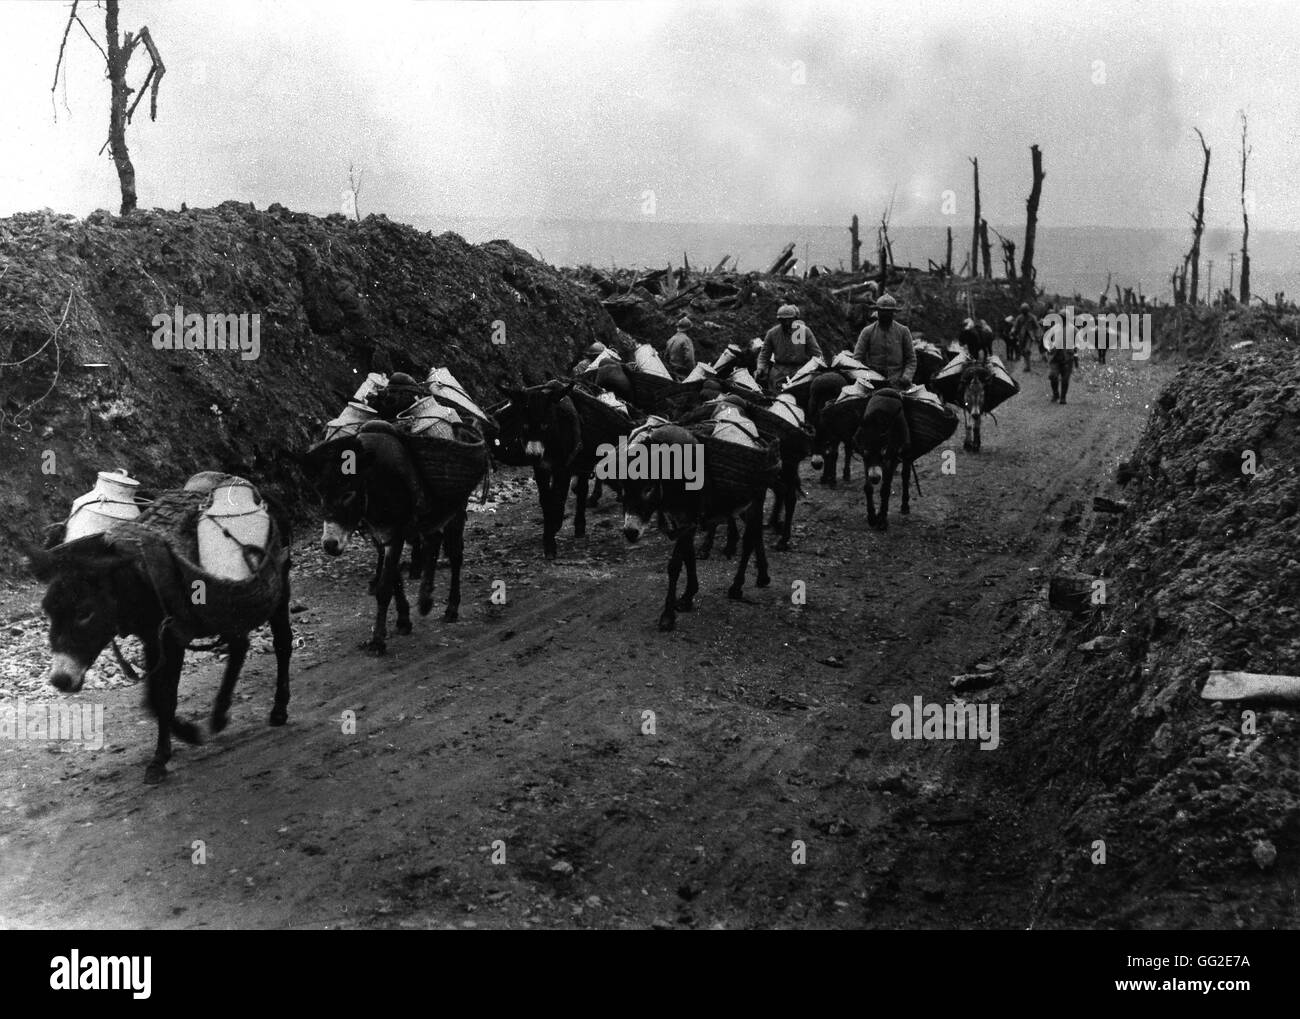 Les ânes apportant de la nourriture aux soldats dans les tranchées, le 17 octobre 1916 France, la Première Guerre mondiale Musée de la symbolique Militaire Banque D'Images